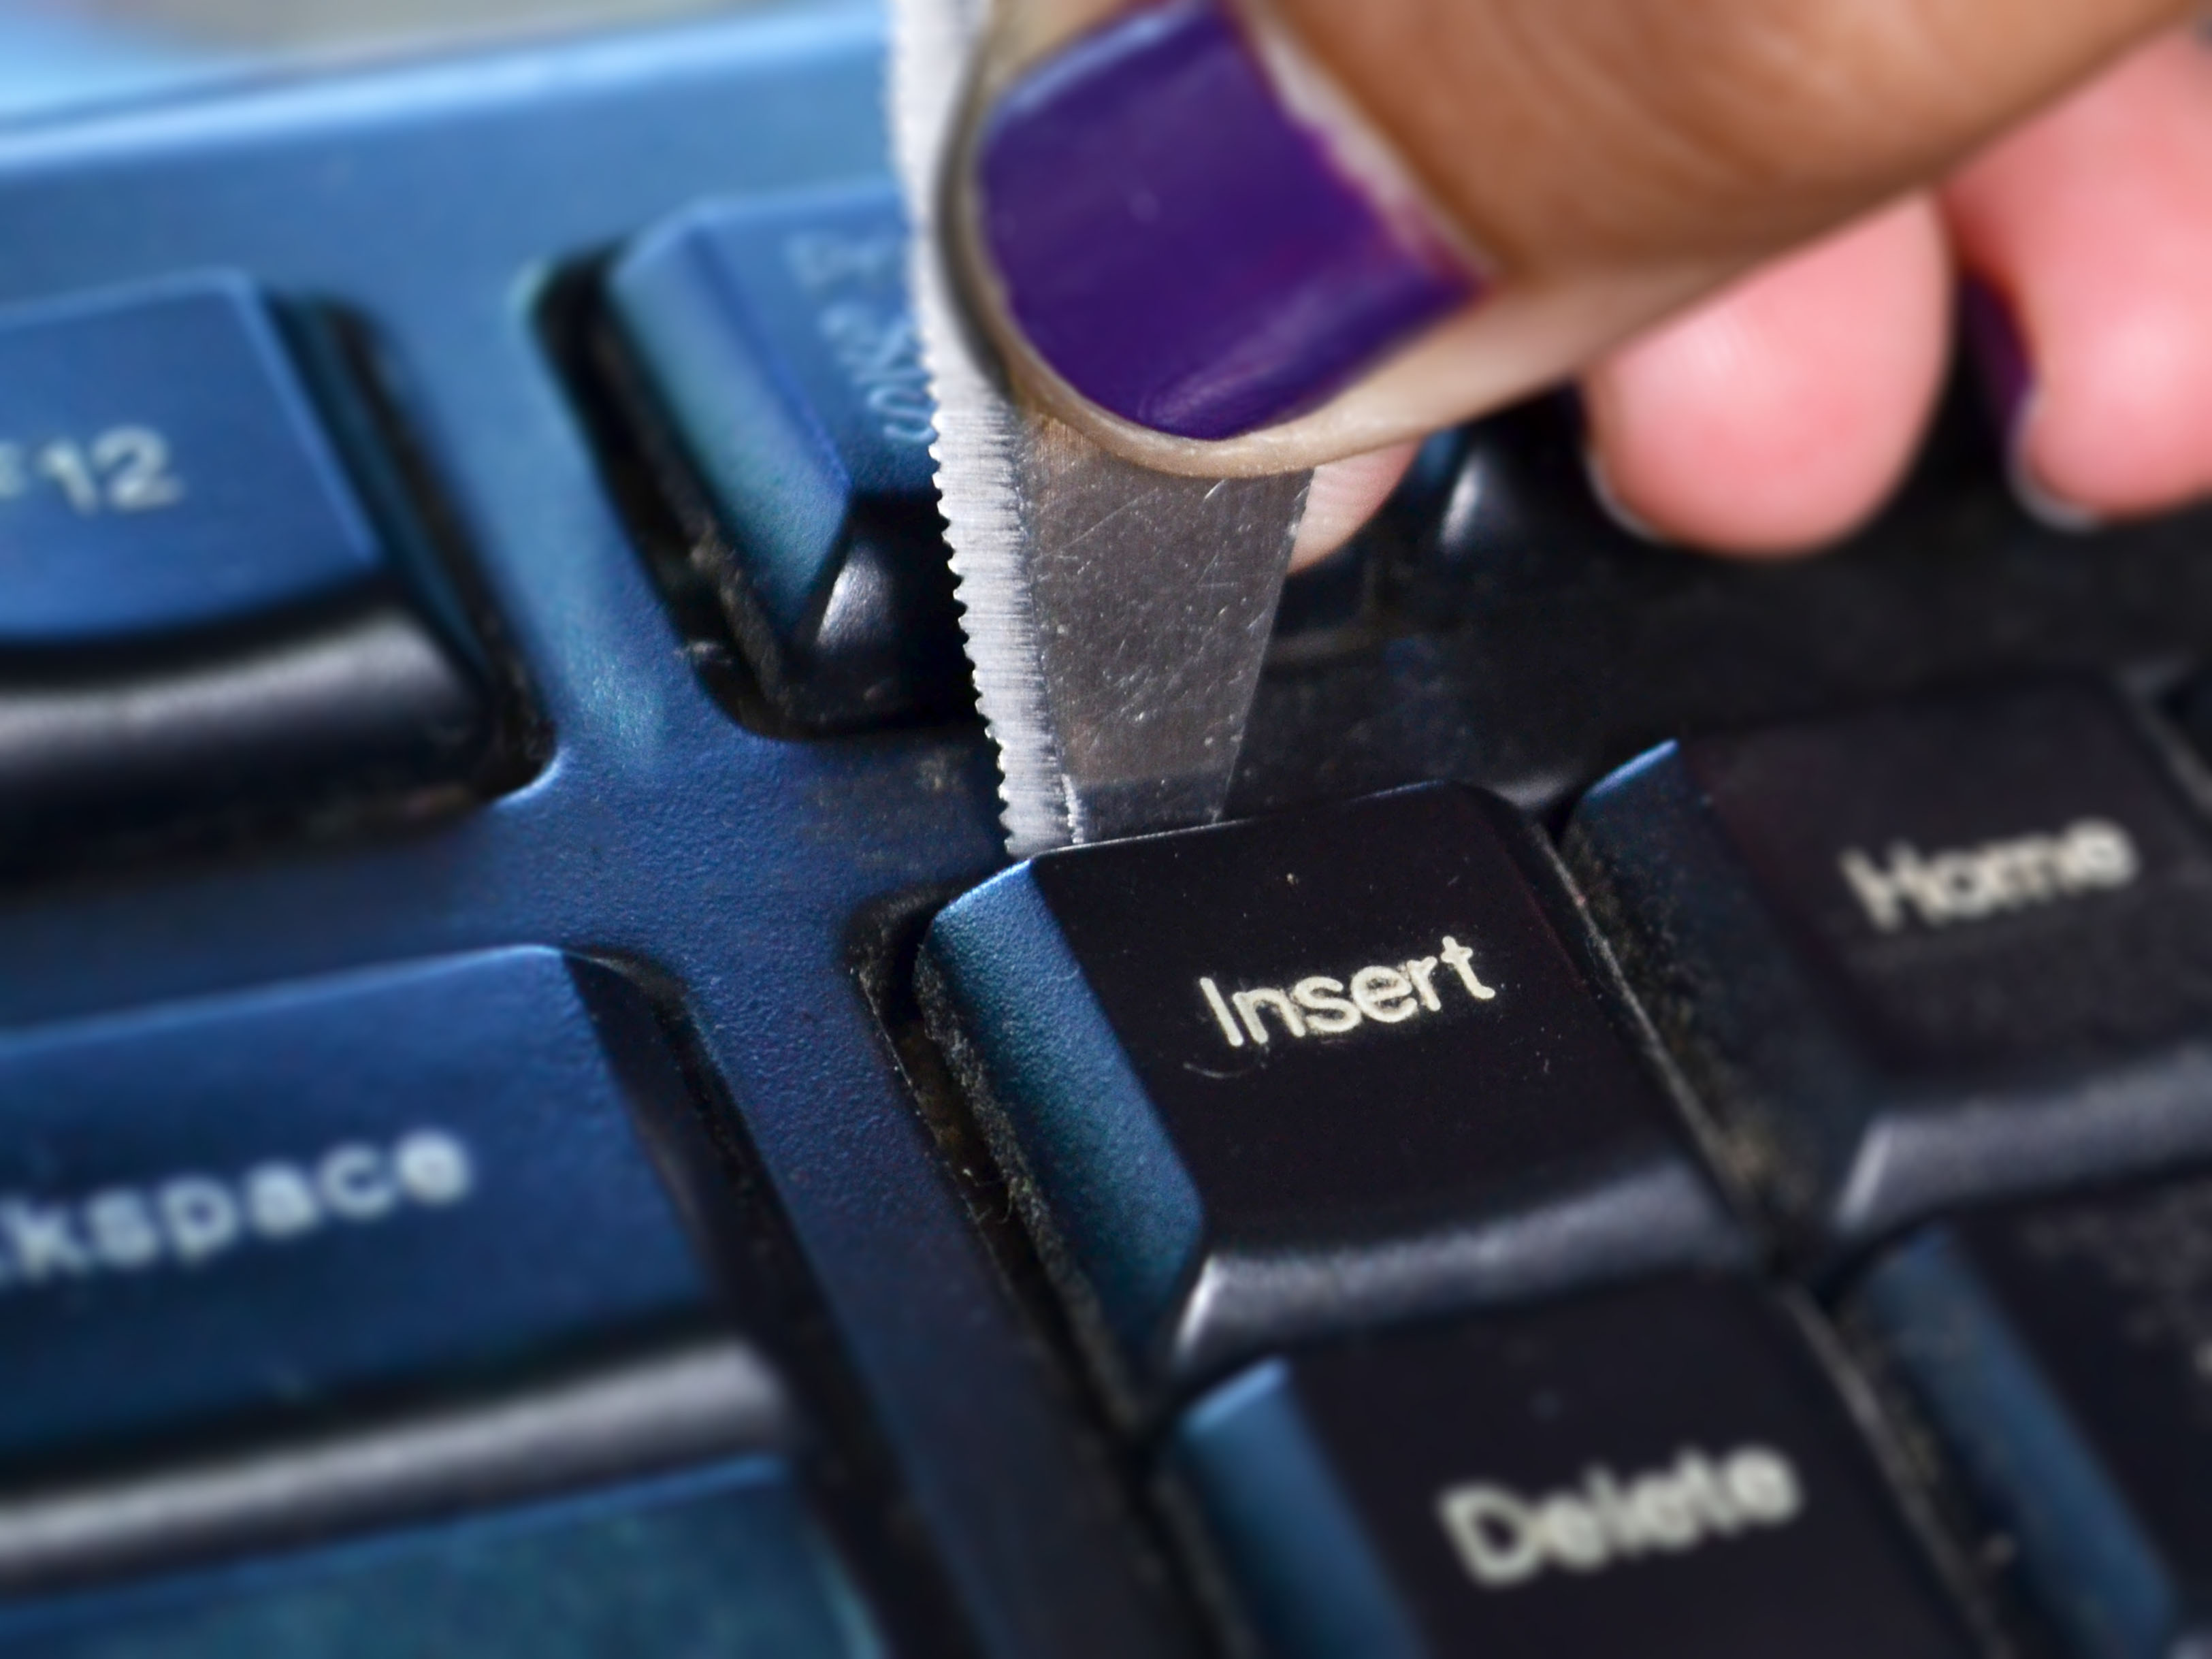 removing insert key